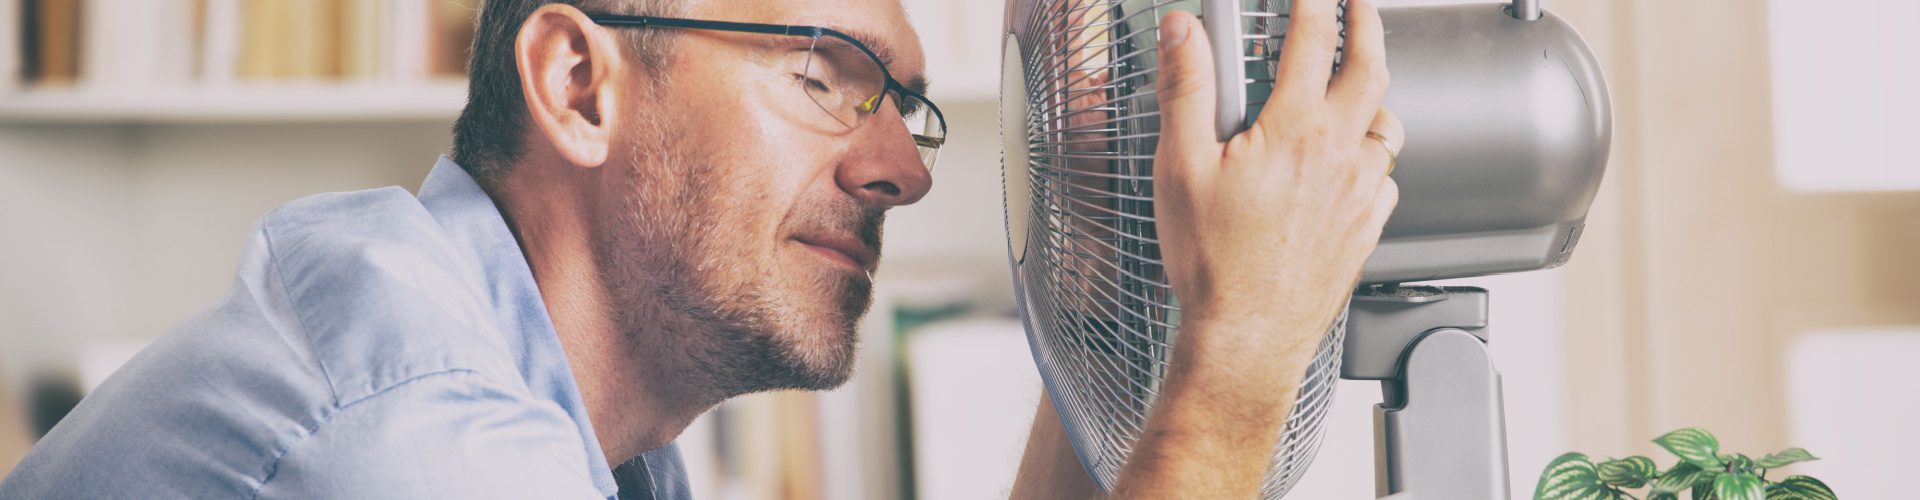 How to Address Workplace Heat Hazards